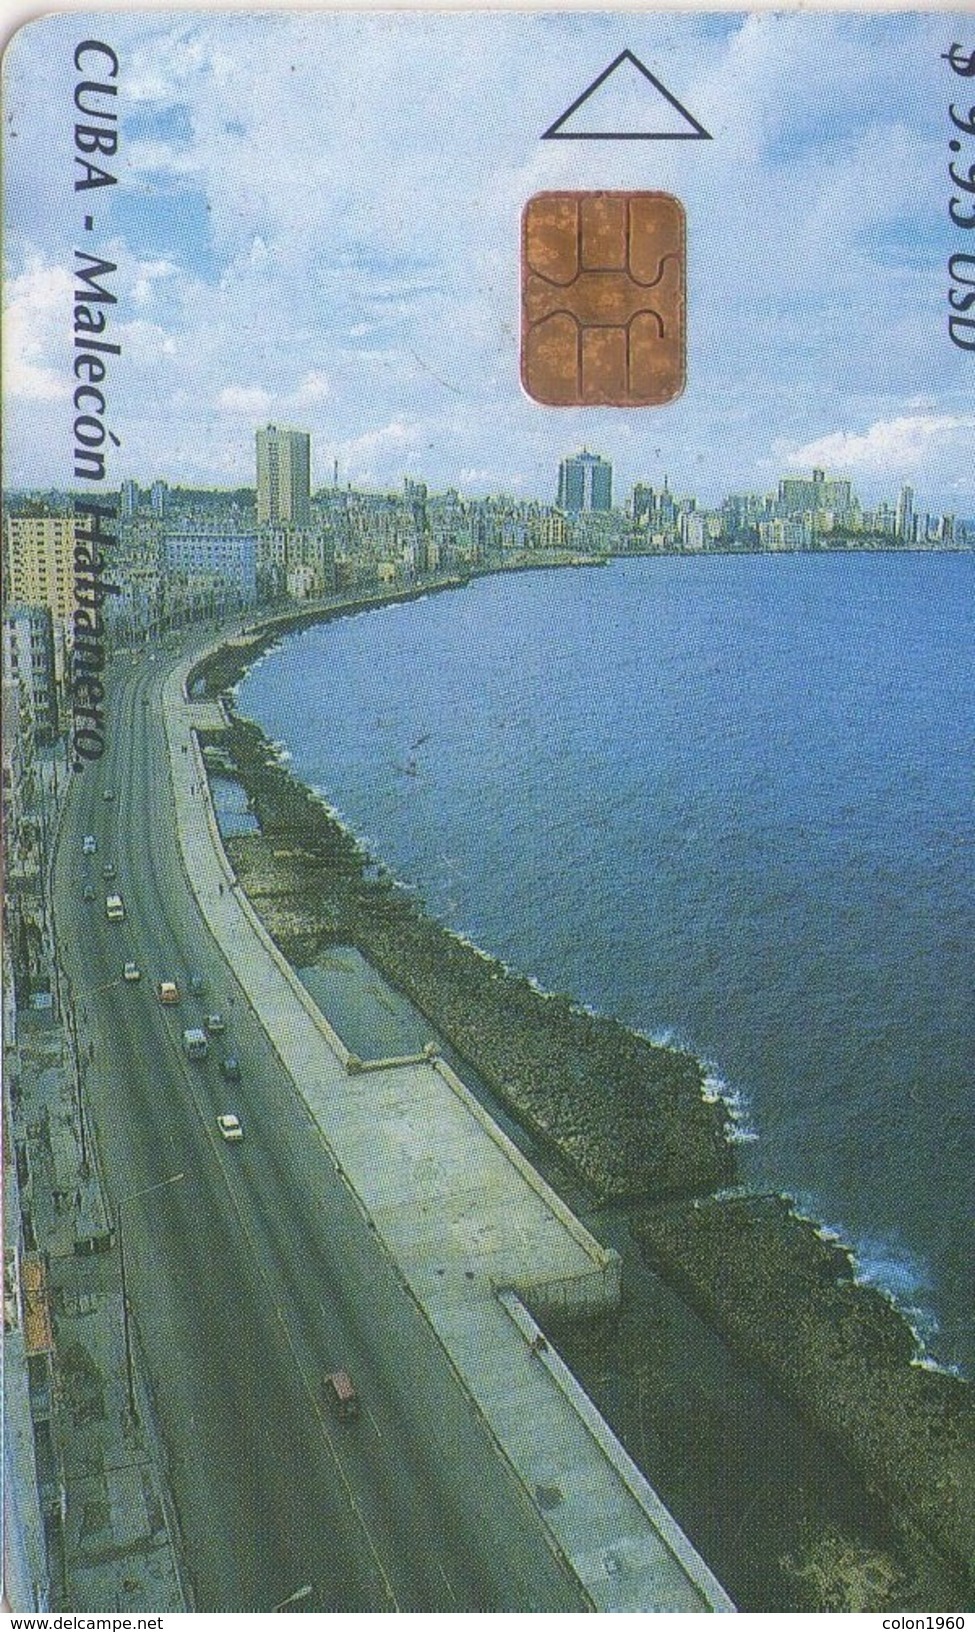 CUBA. Malecón Habanero. 2003-01. 30000 Ex. CU-167. (335) - Cuba